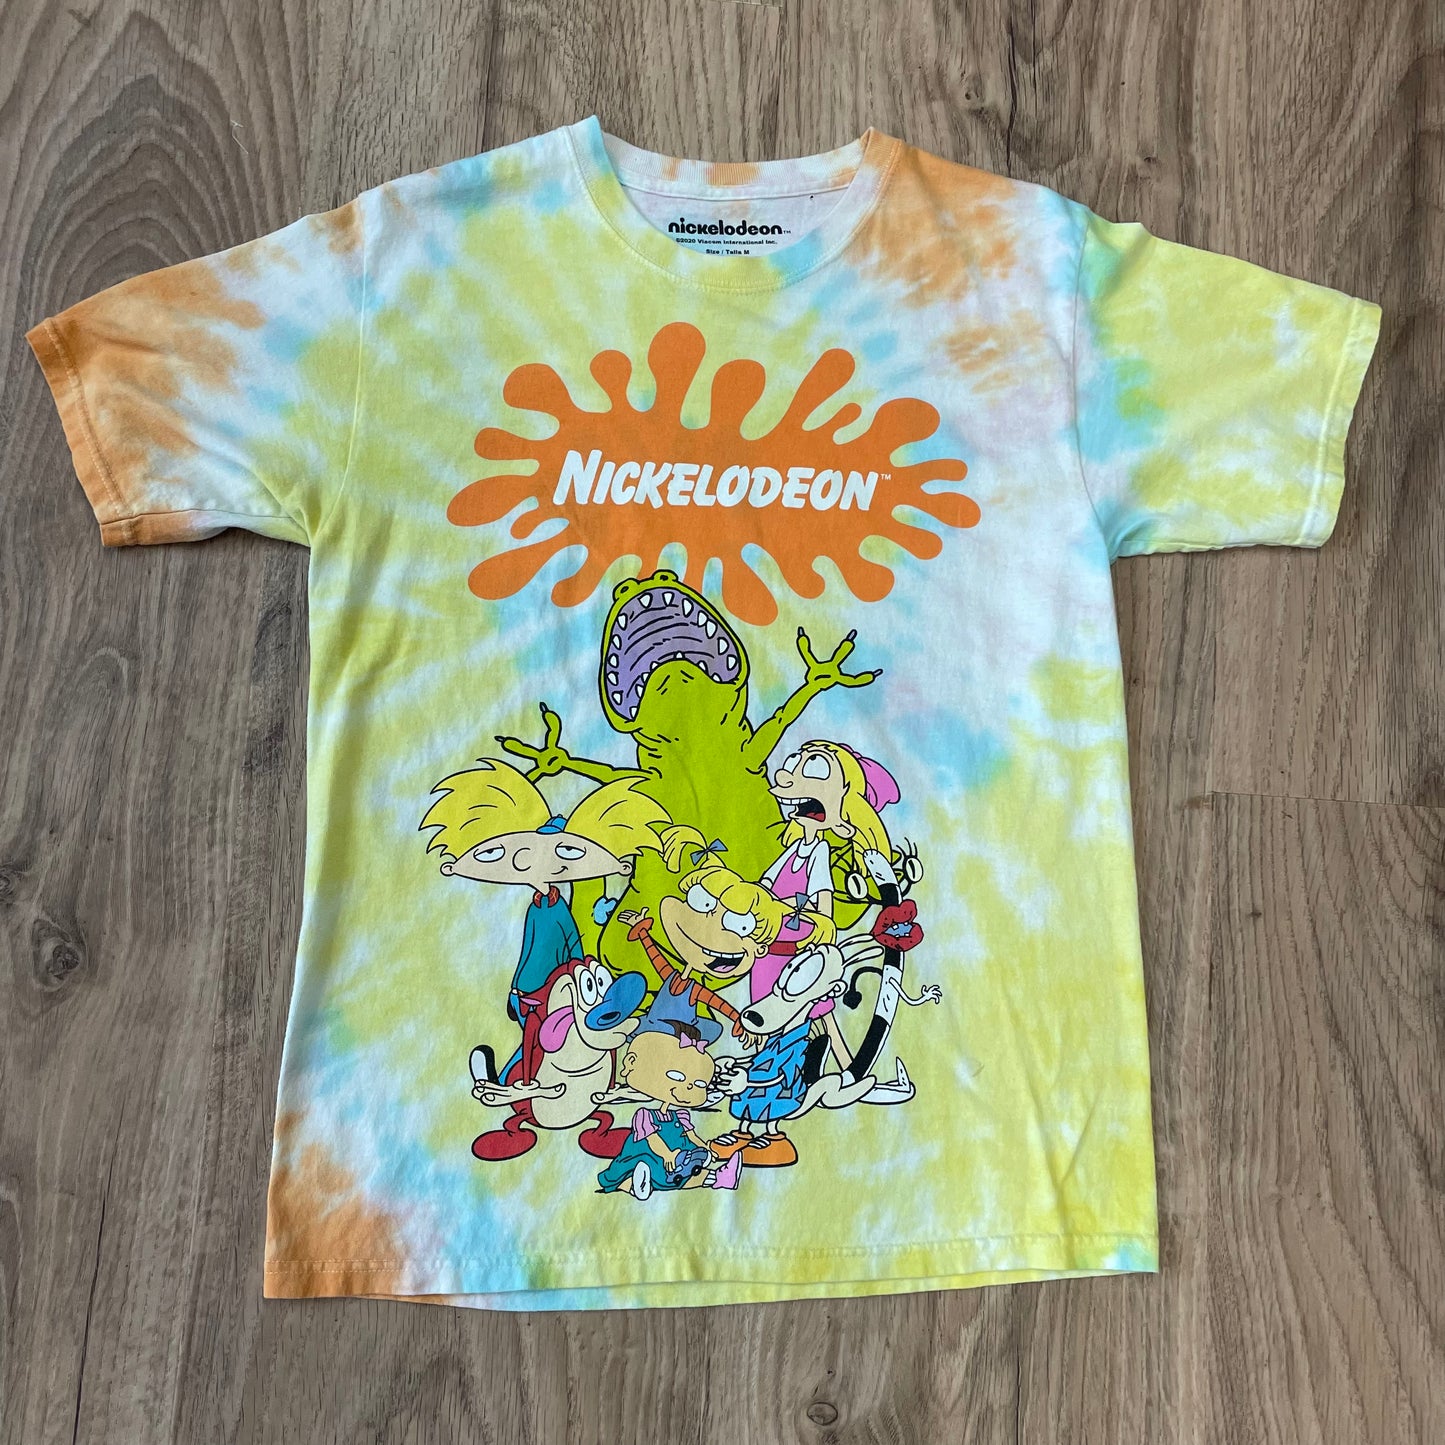 Nickelodeon print T-shirt